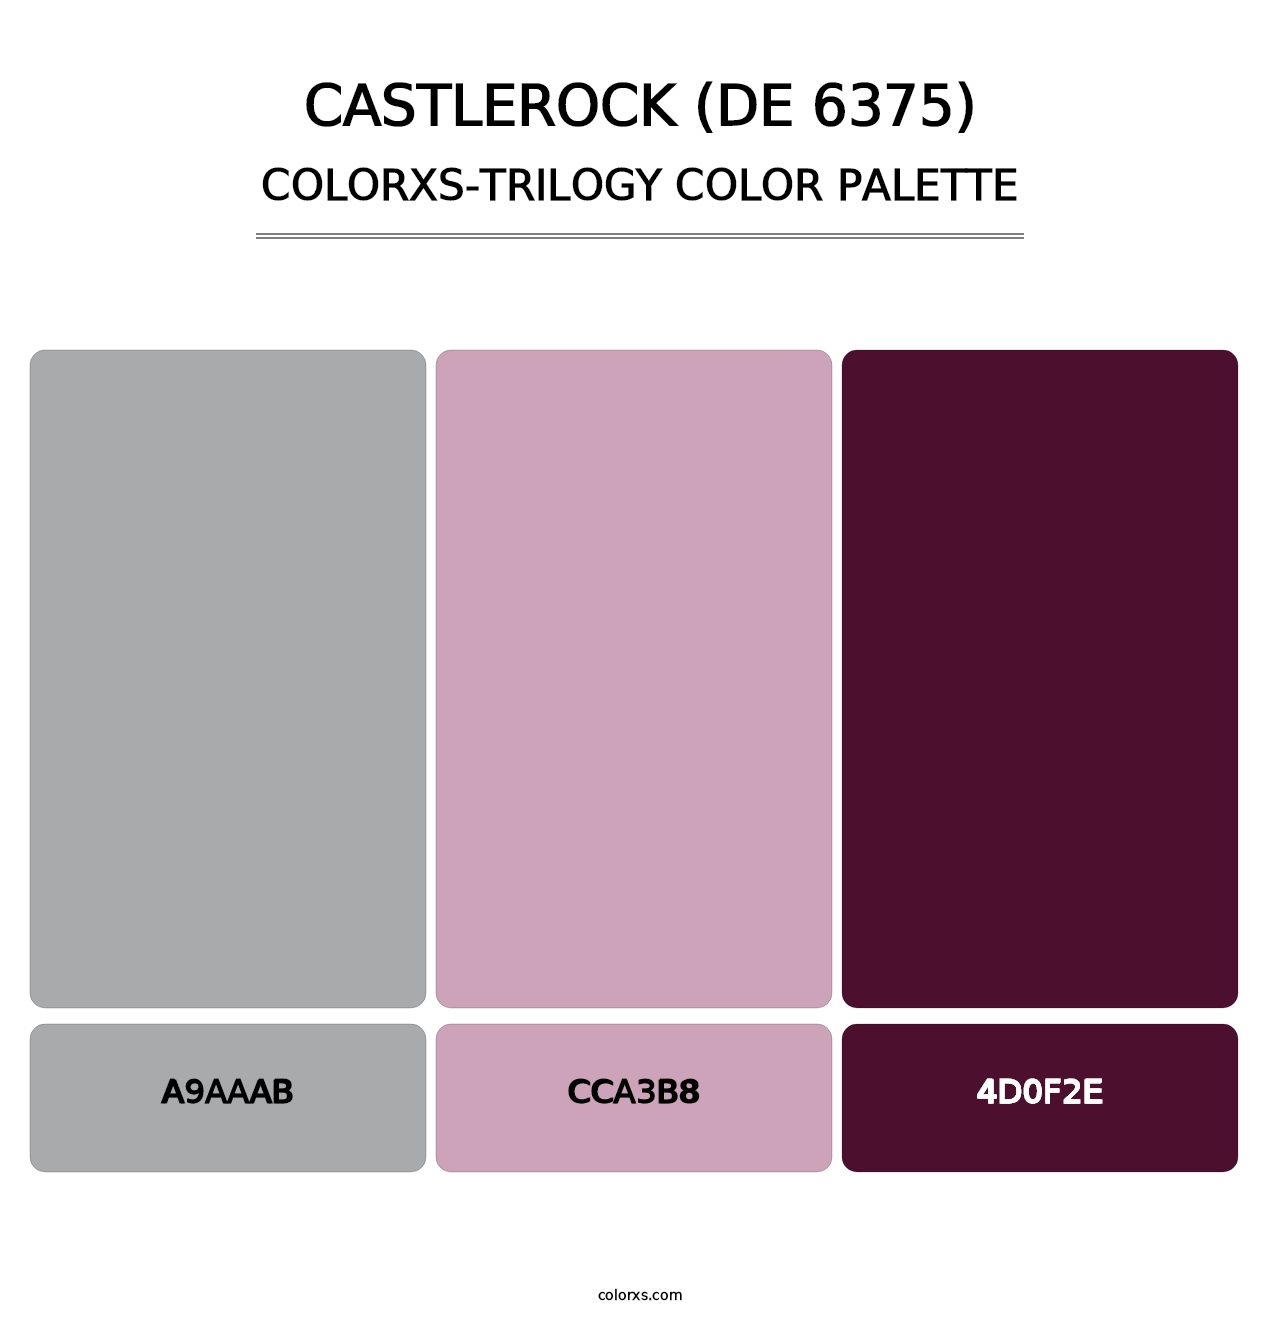 Castlerock (DE 6375) - Colorxs Trilogy Palette